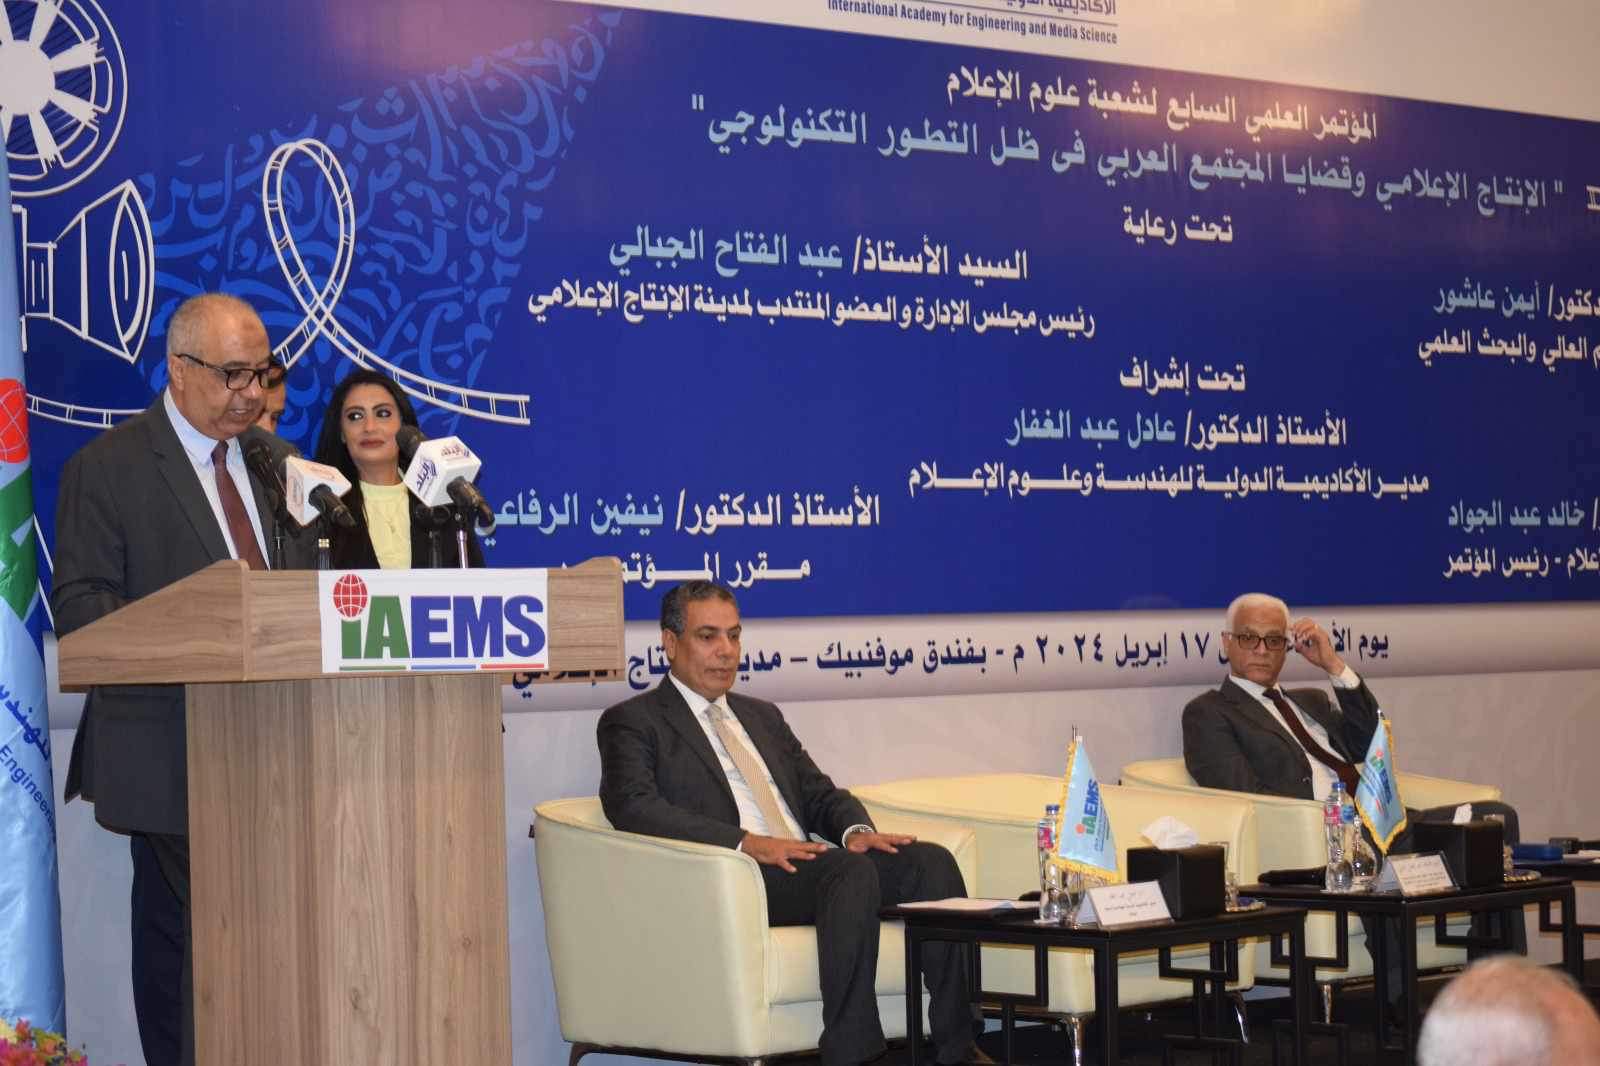 مؤتمر الإنتاج الإعلامي وقضايا المجتمع العربي (1)